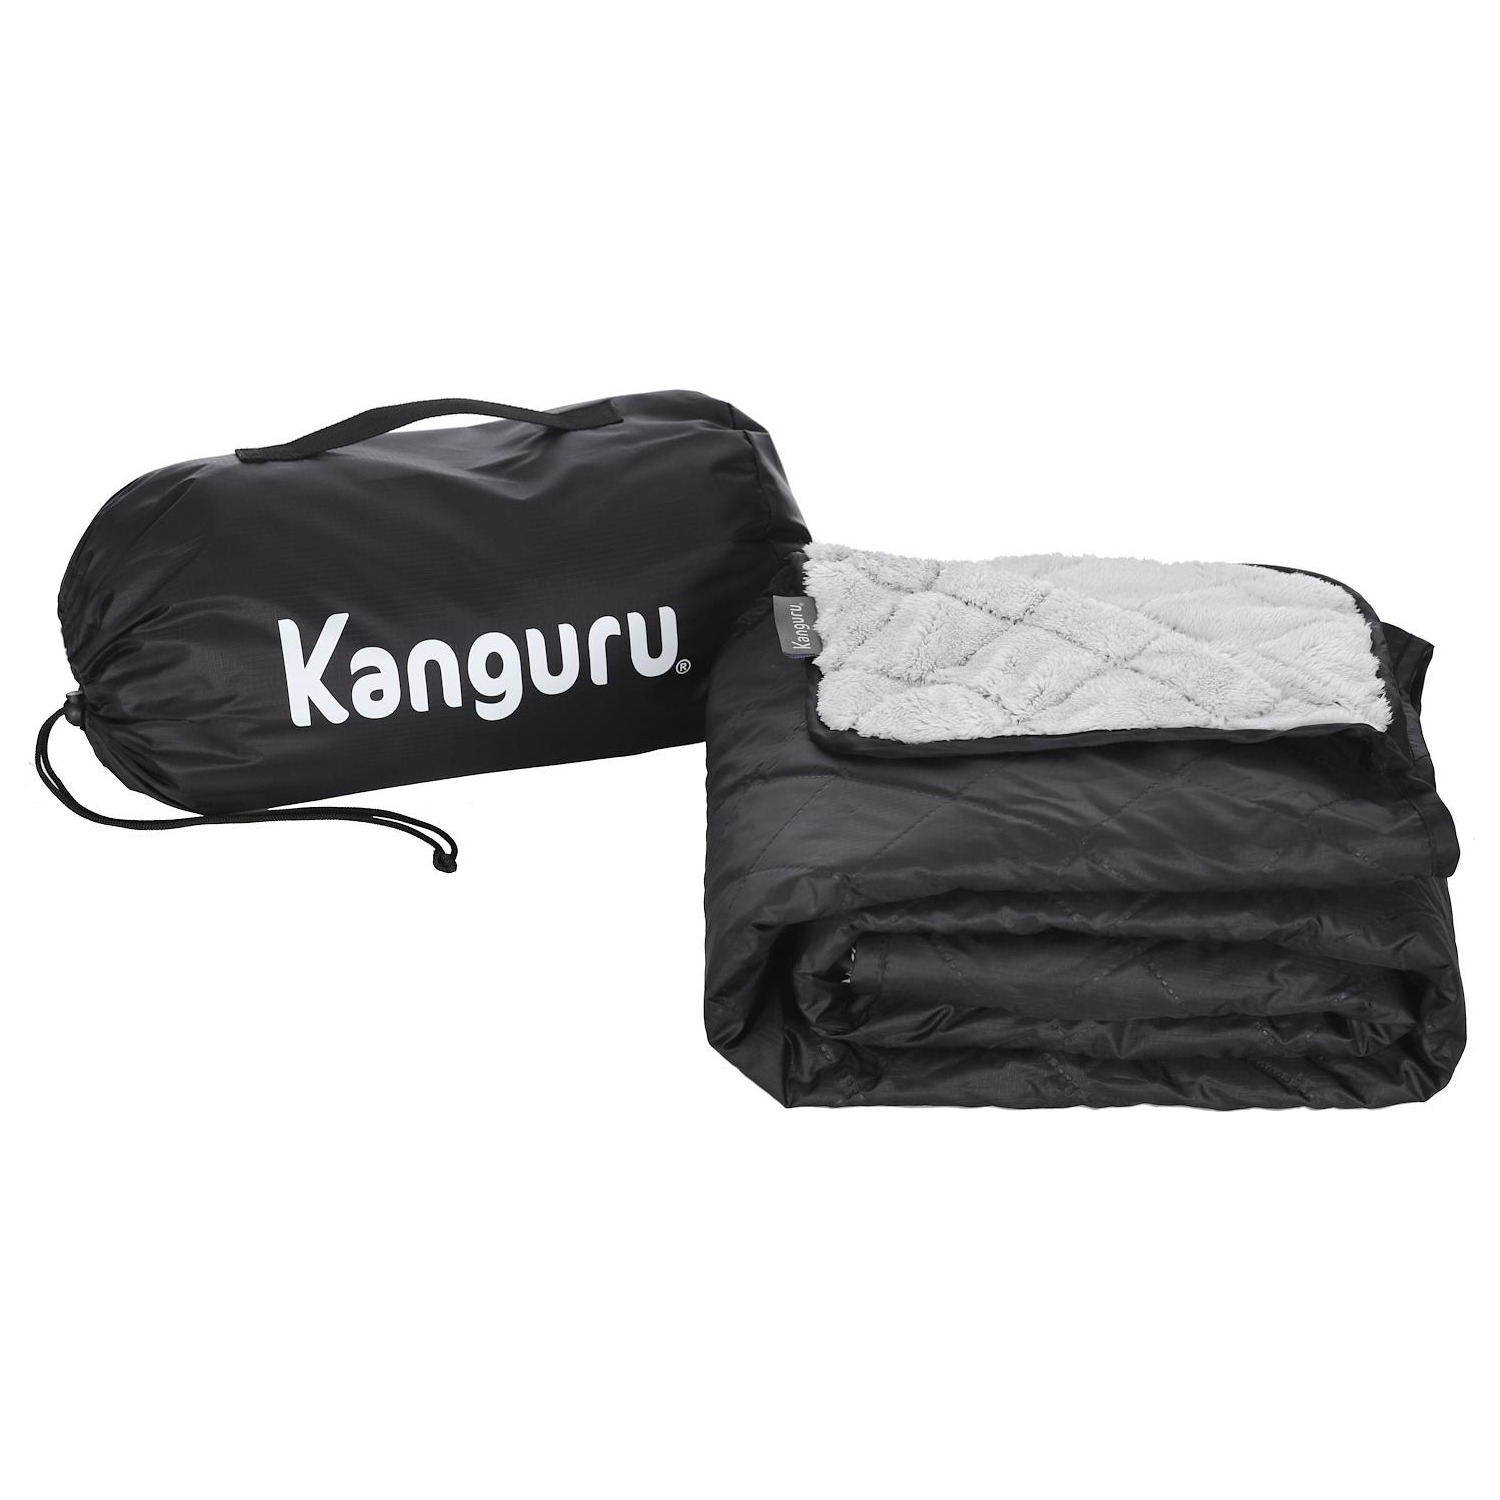 Immagine per Plaid Kanguru picnic fluffi Blanket dimensioni 140cm x 170cm da DIMOStore